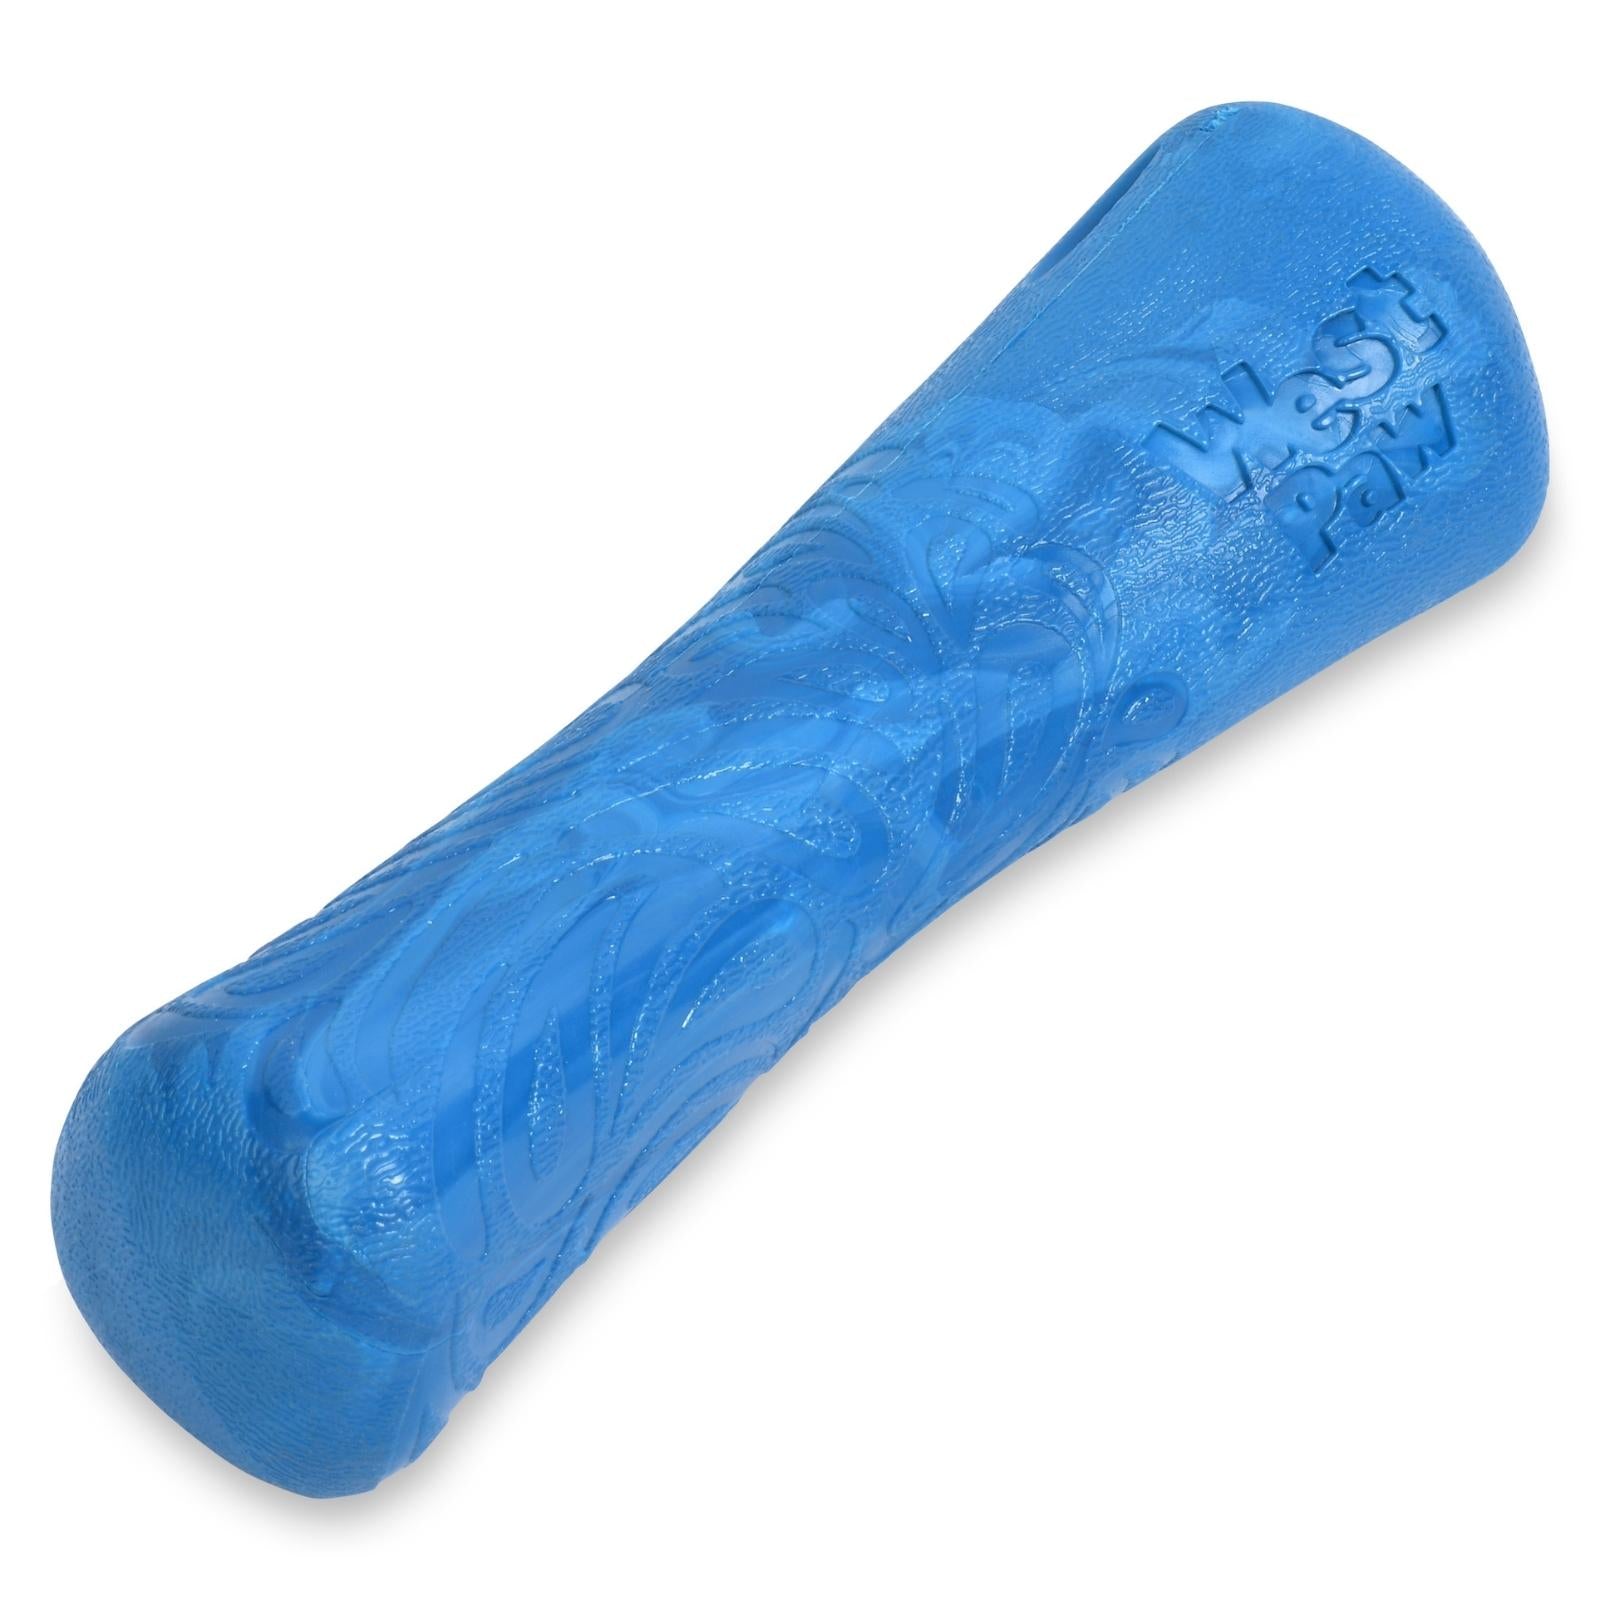 DRIFTY de West Paw® color Azul Surf - Hueso de Juguete para Perros